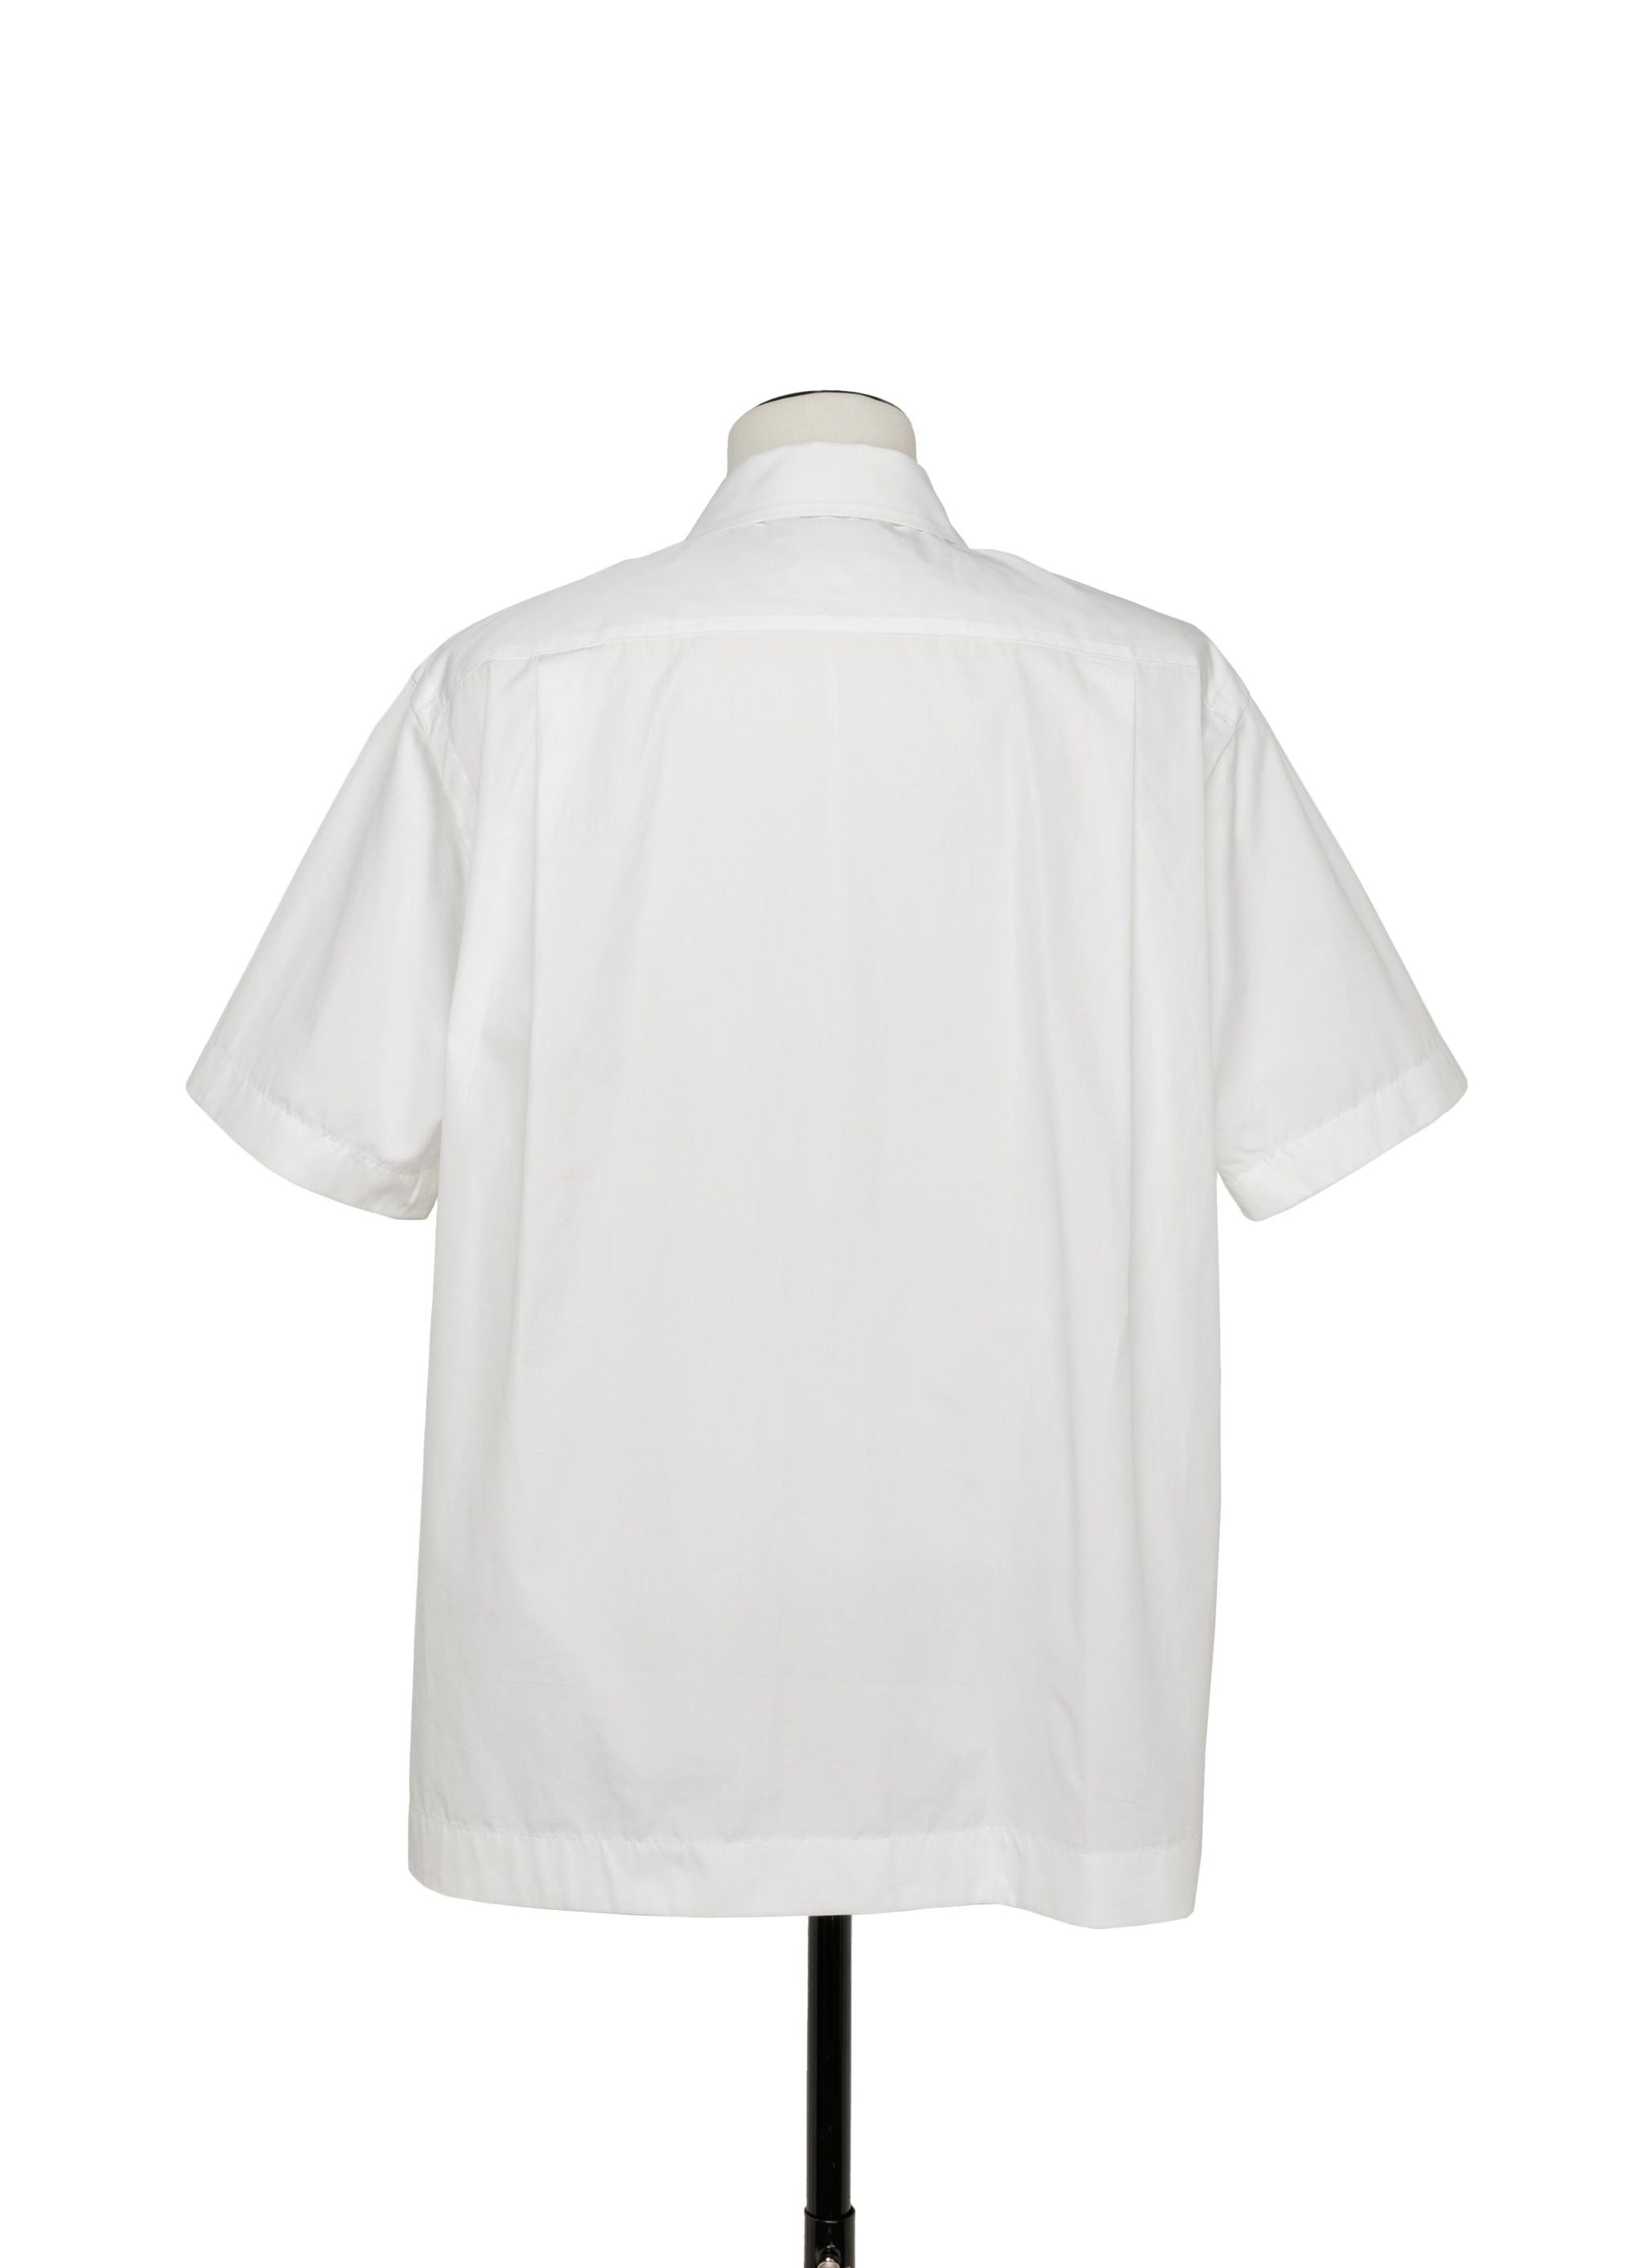 Thomas Mason Cotton Poplin Shirt - 4